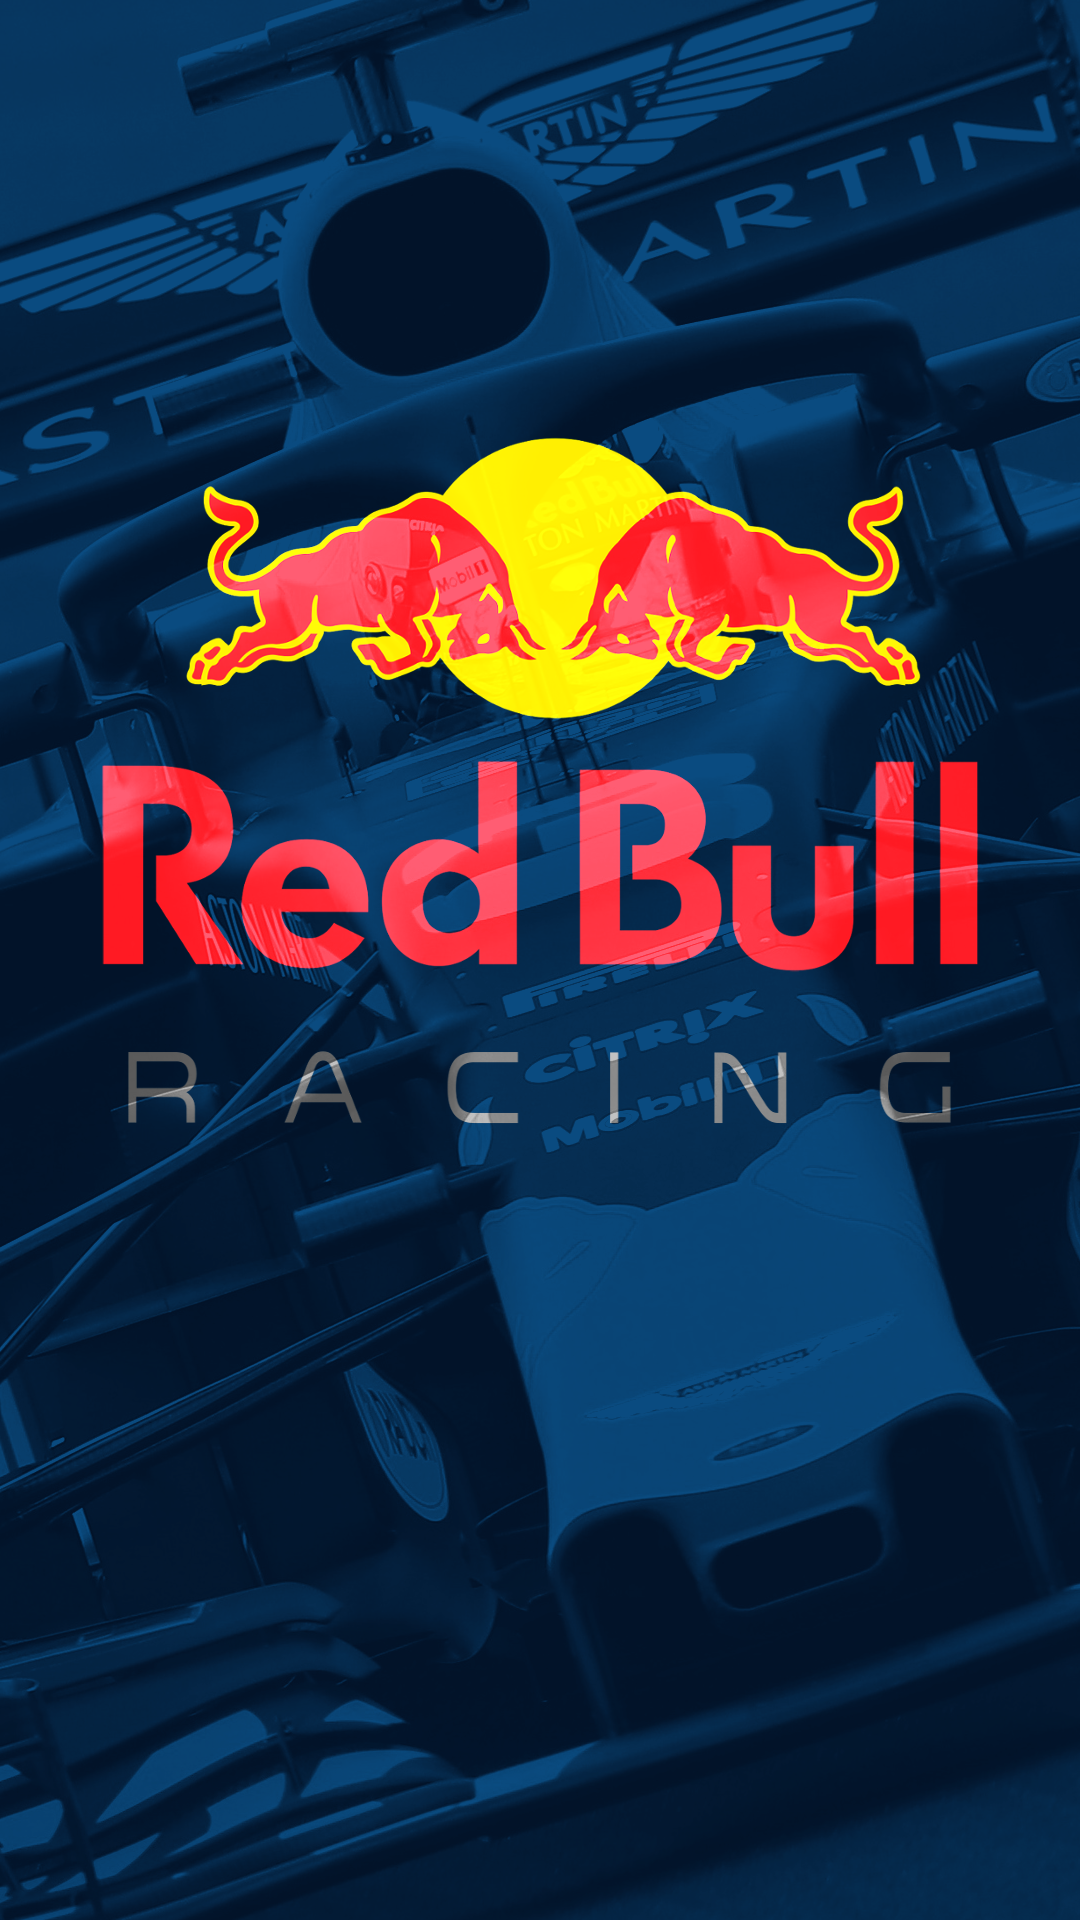 Here's a Red Bull Racing Wallpaper that .reddit.com